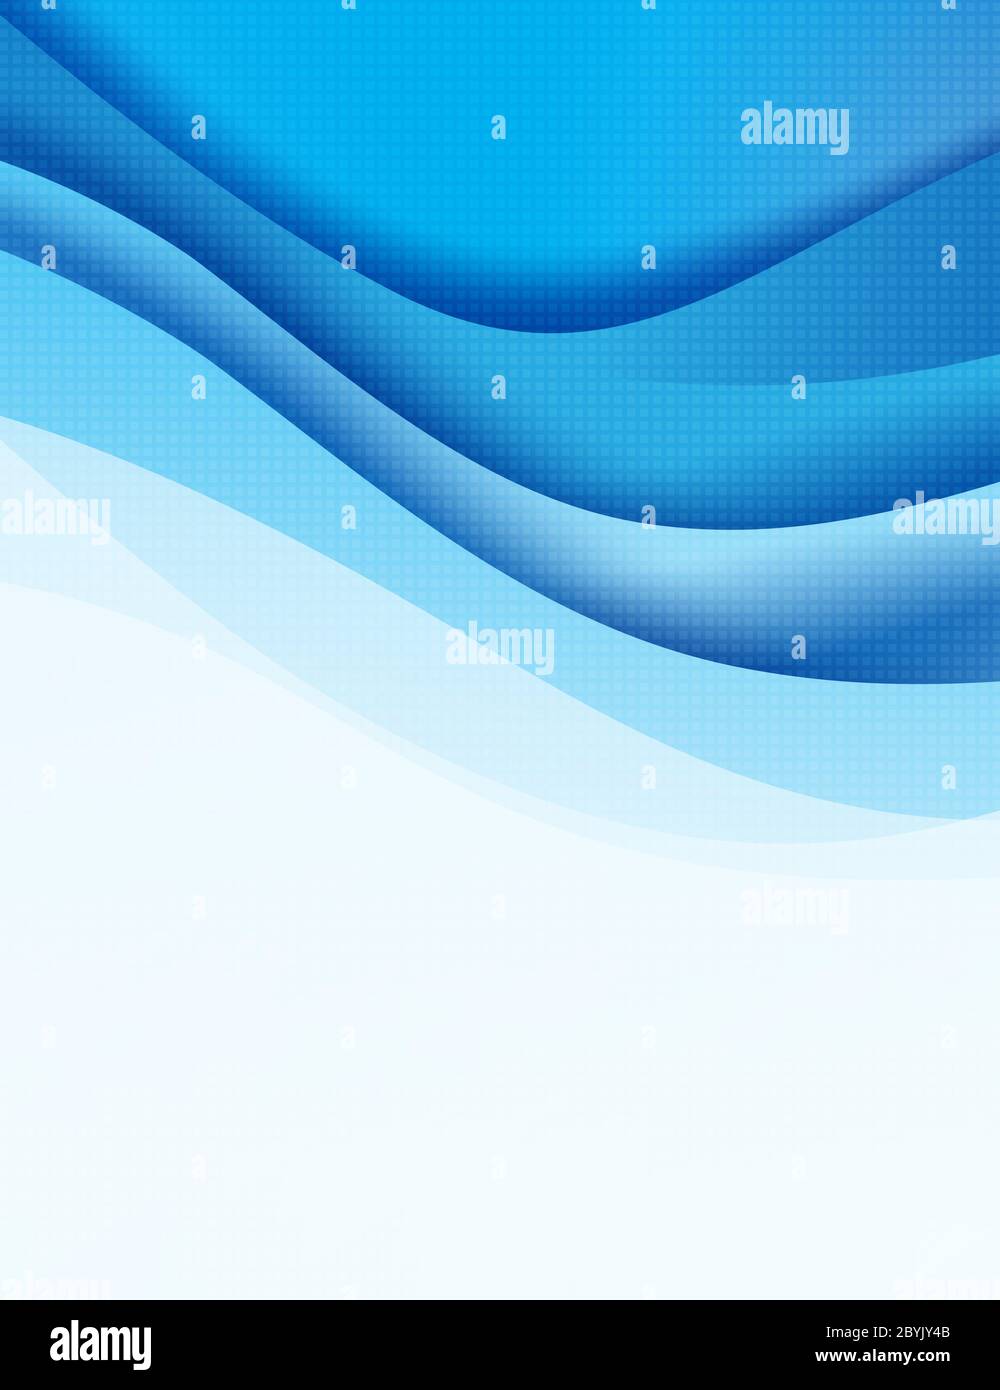 Abstrakter Hintergrund blau dunkel Kurve Mischung geschichteten und überlappen Element, moderne und elegante Vektor-Illustration eps10 Stockfoto